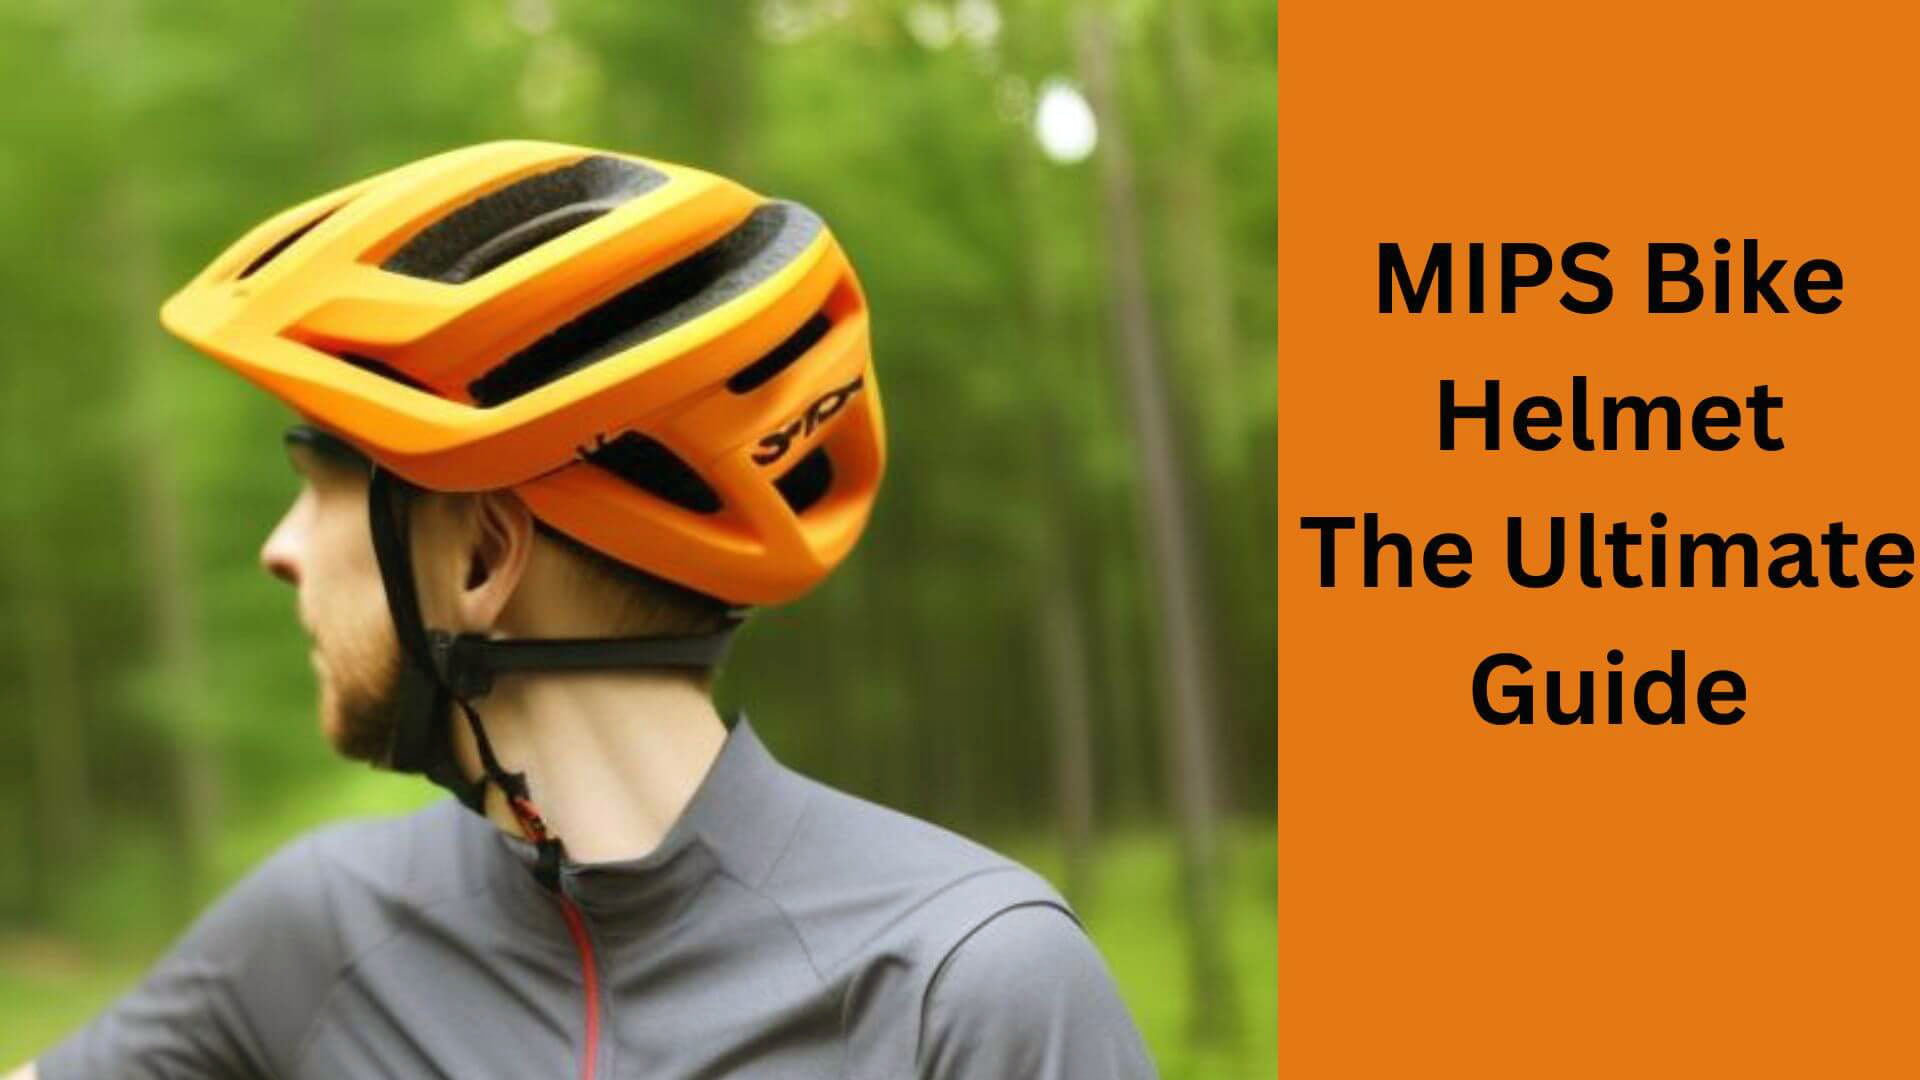 MIPS Bike Helmet: The Ultimate Guide